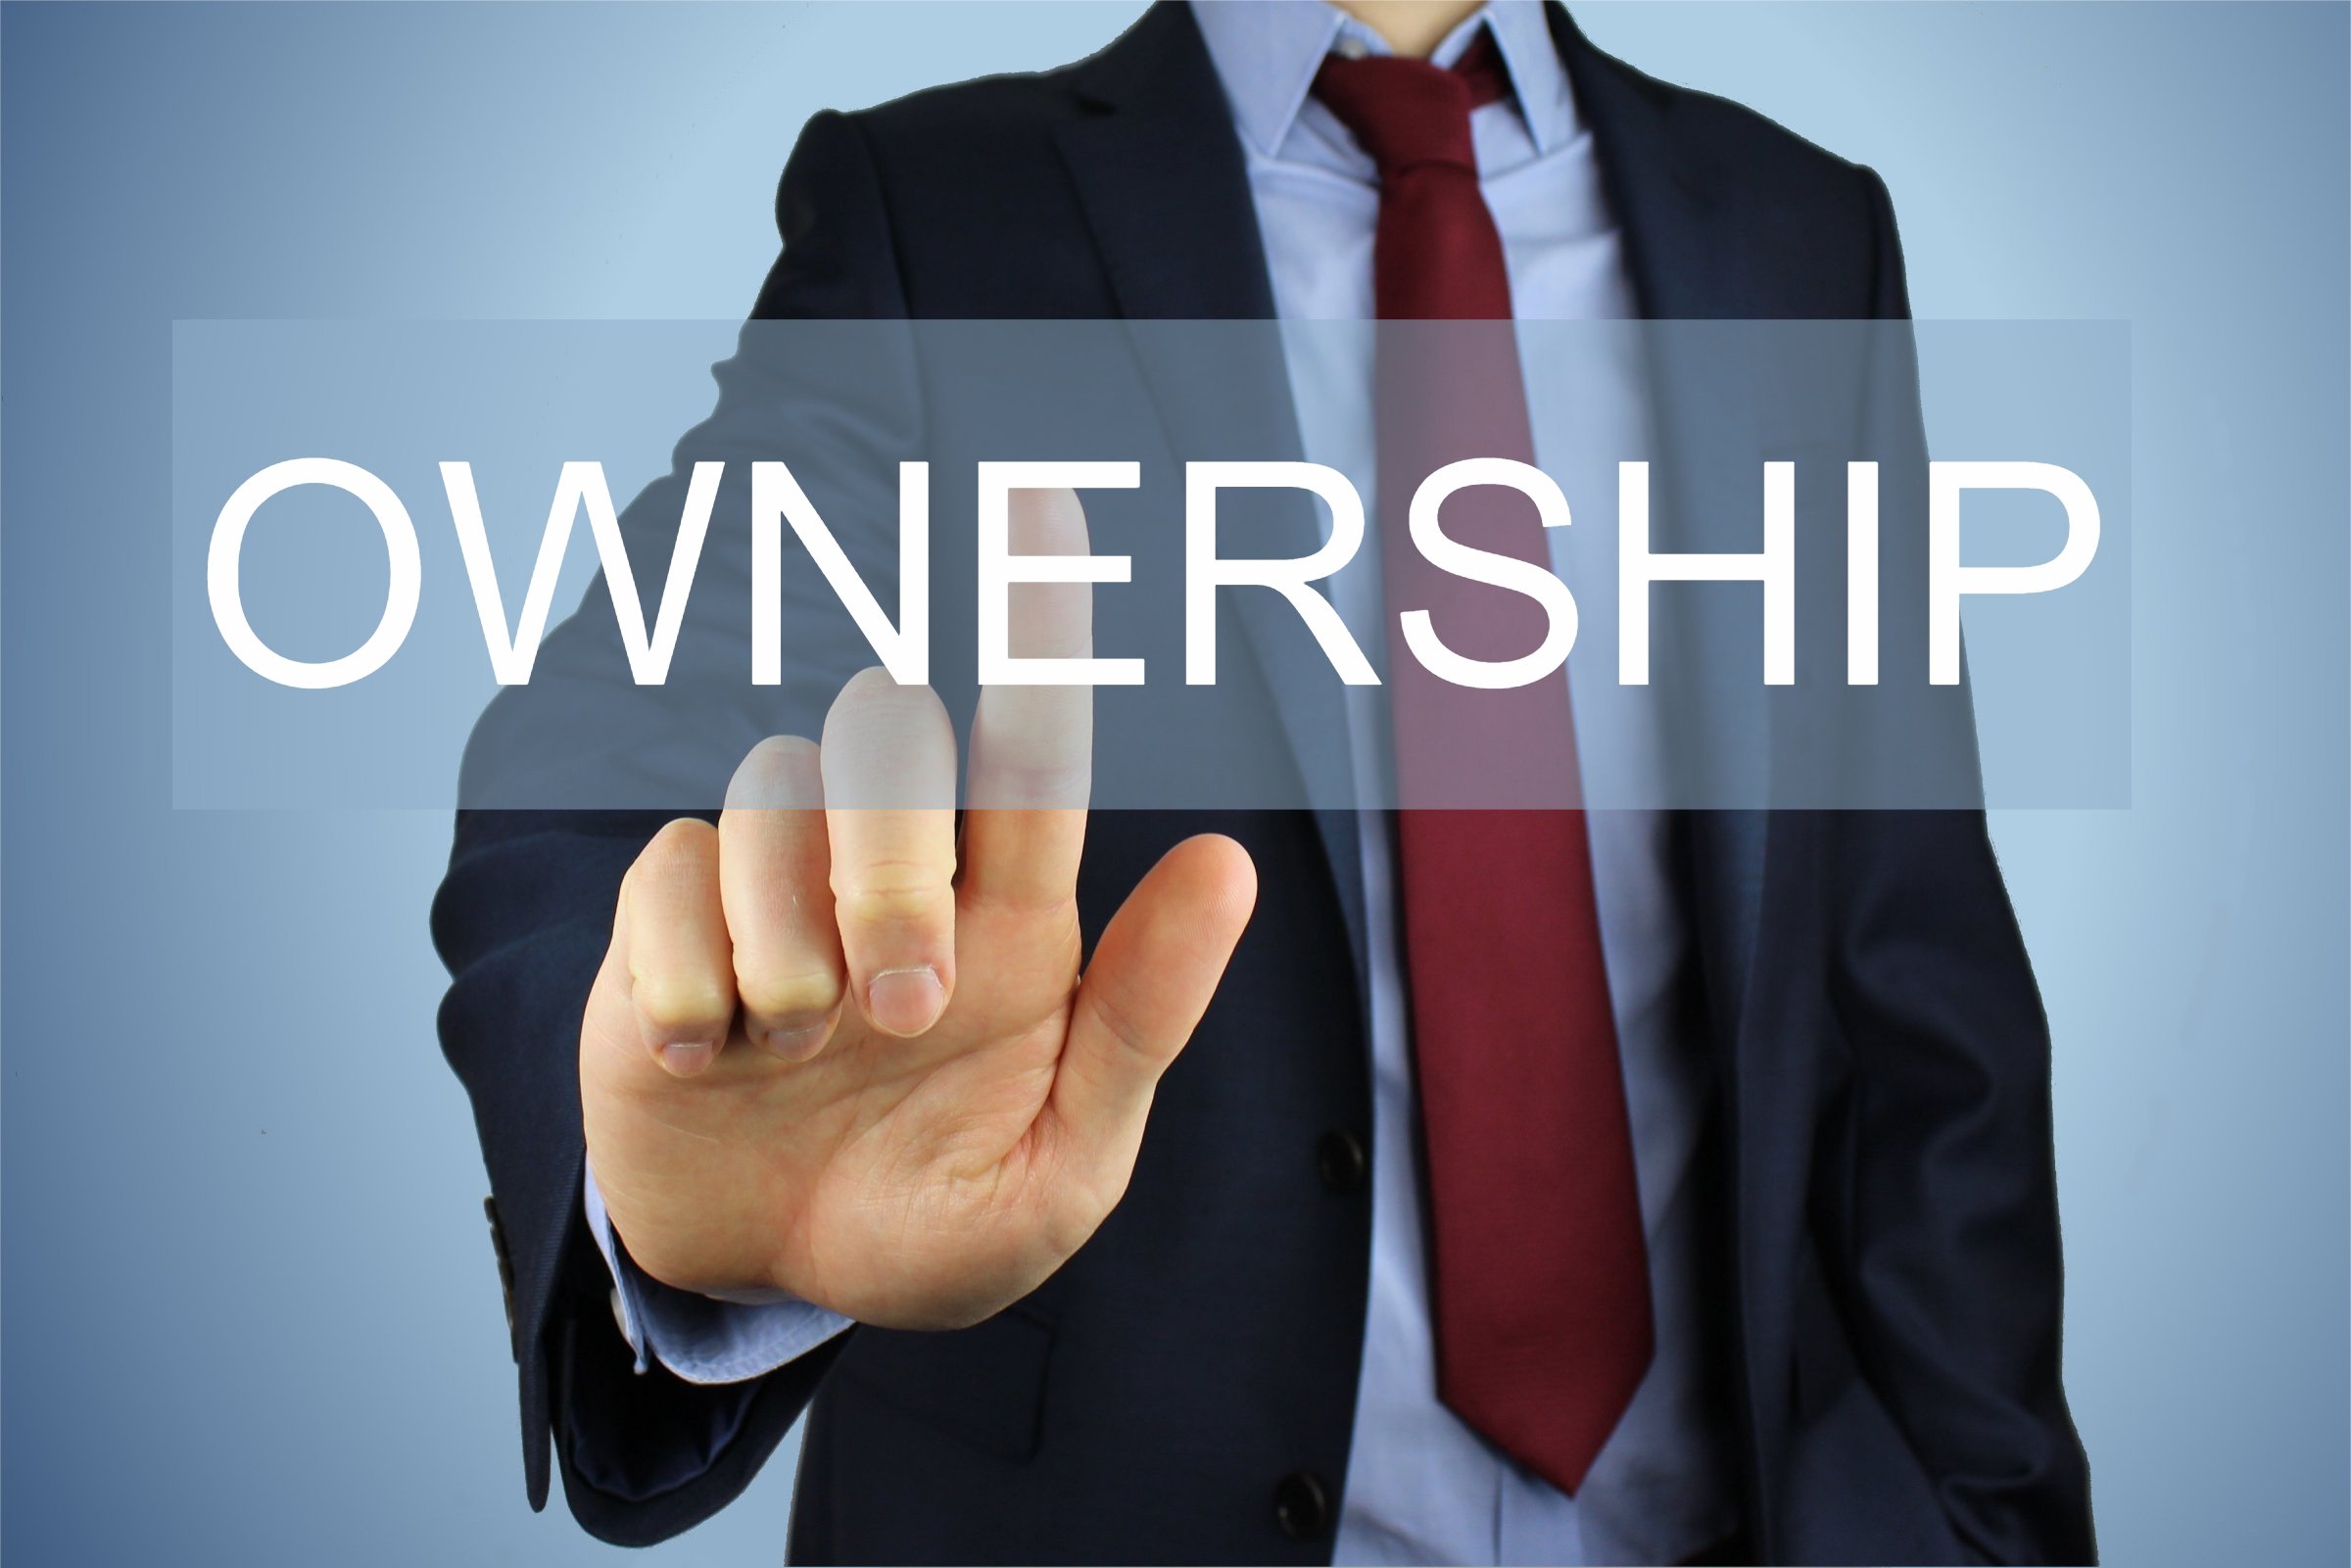 ownership